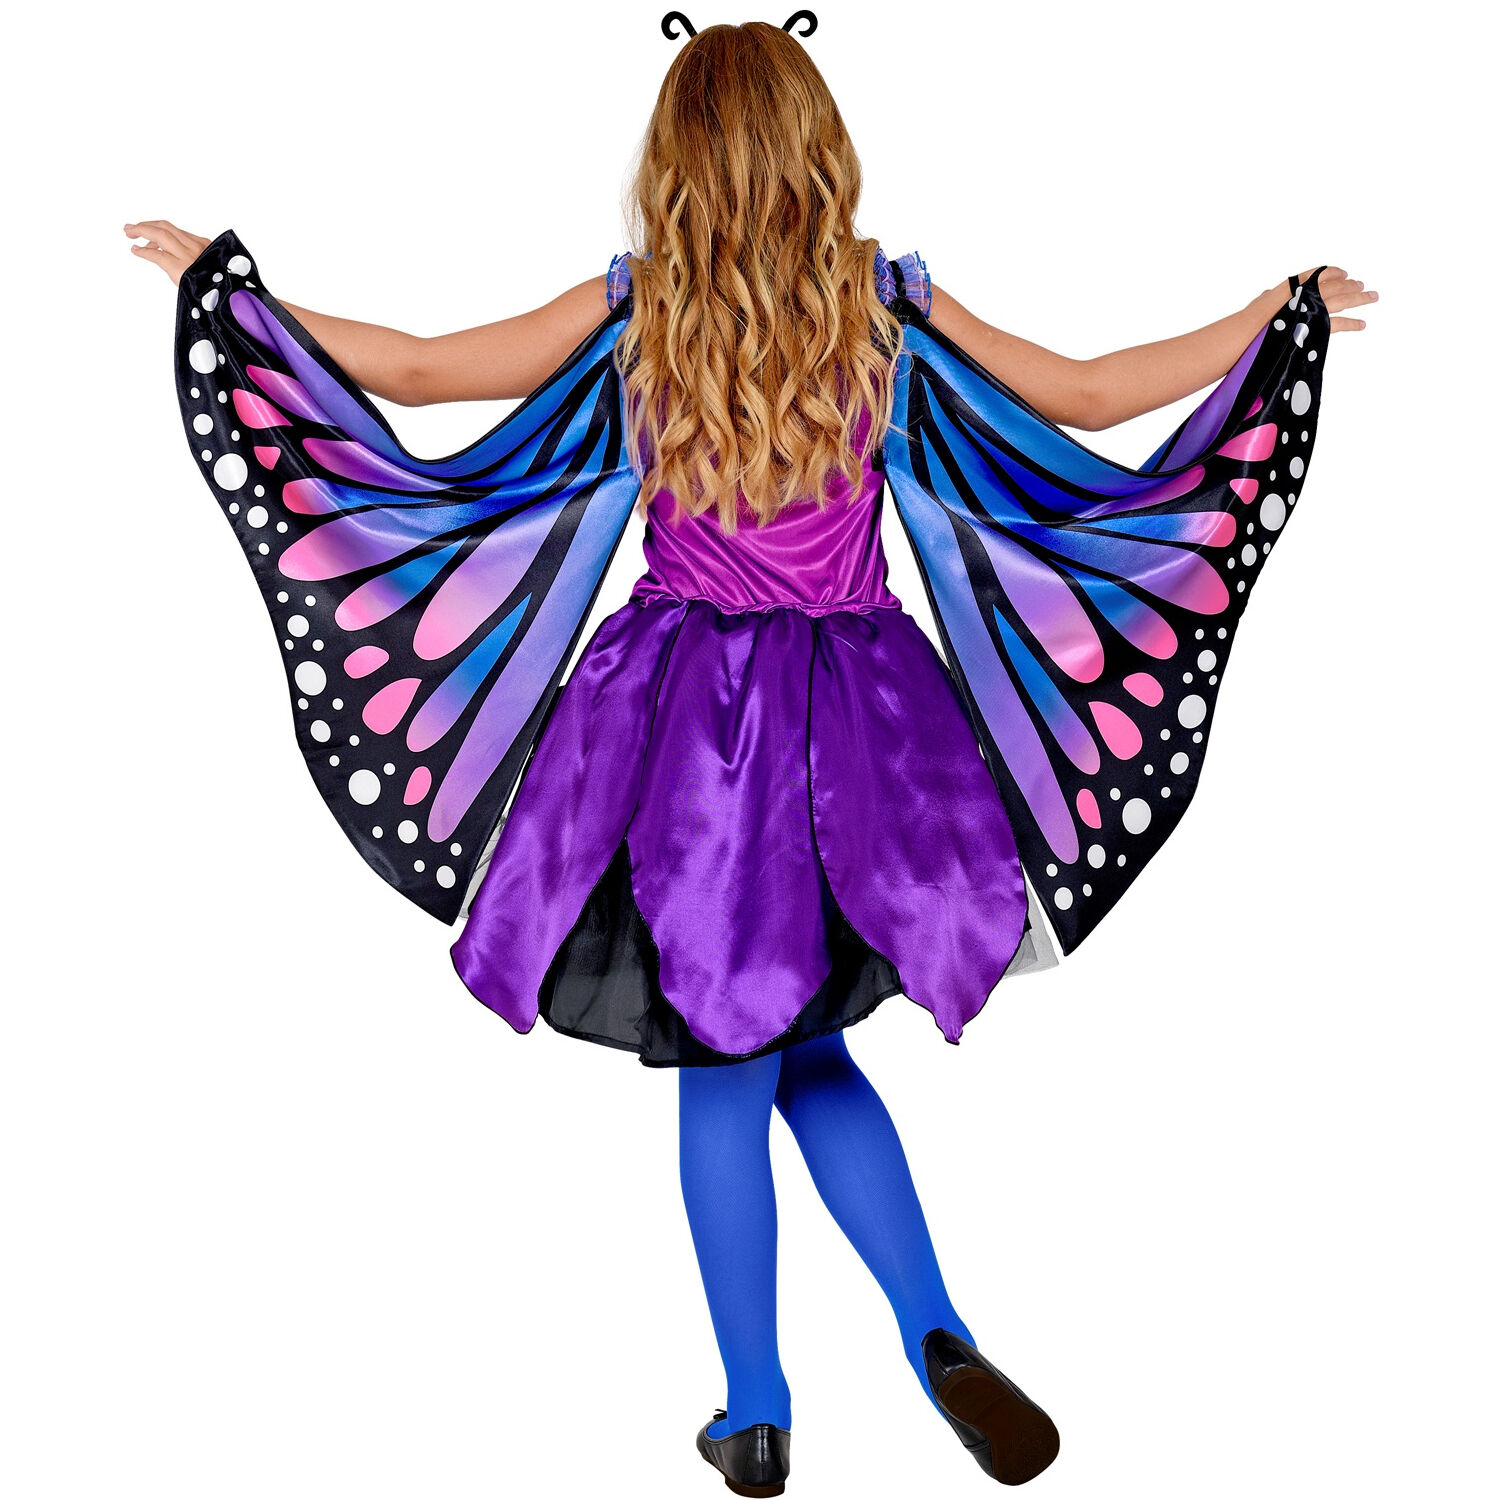 NEU Kinder-Kostüm Schmetterling, Kleid mit Tutu, Flügel, Haarreif, Gr. 116 Bild 2